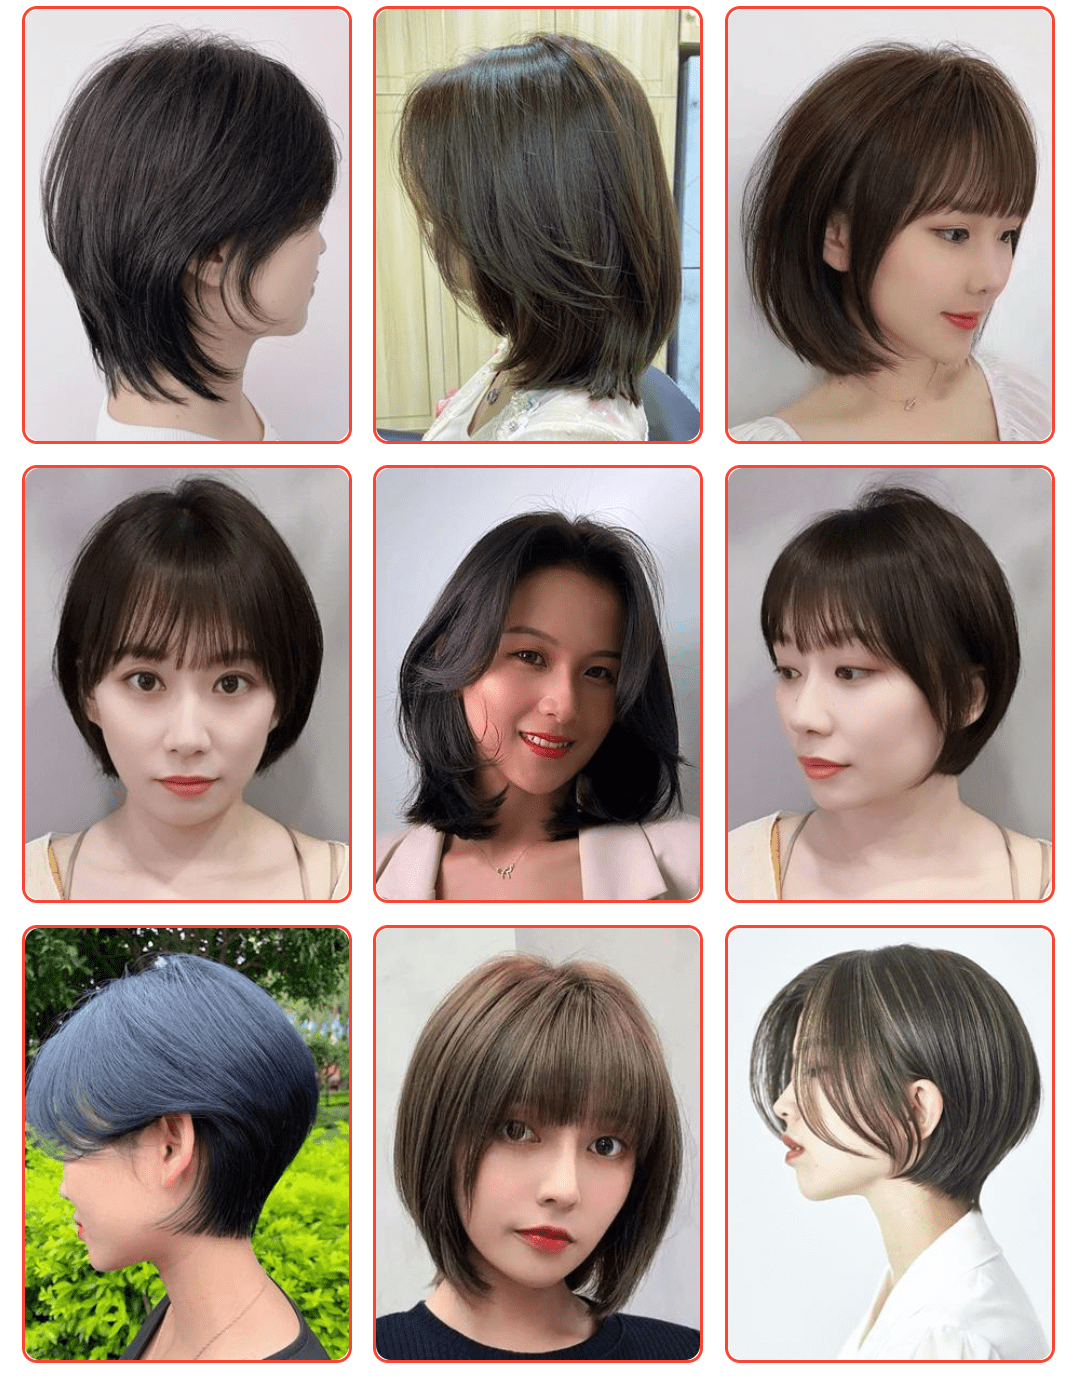 原创女人发型别乱剪,有这3个特征,剪短发就对了